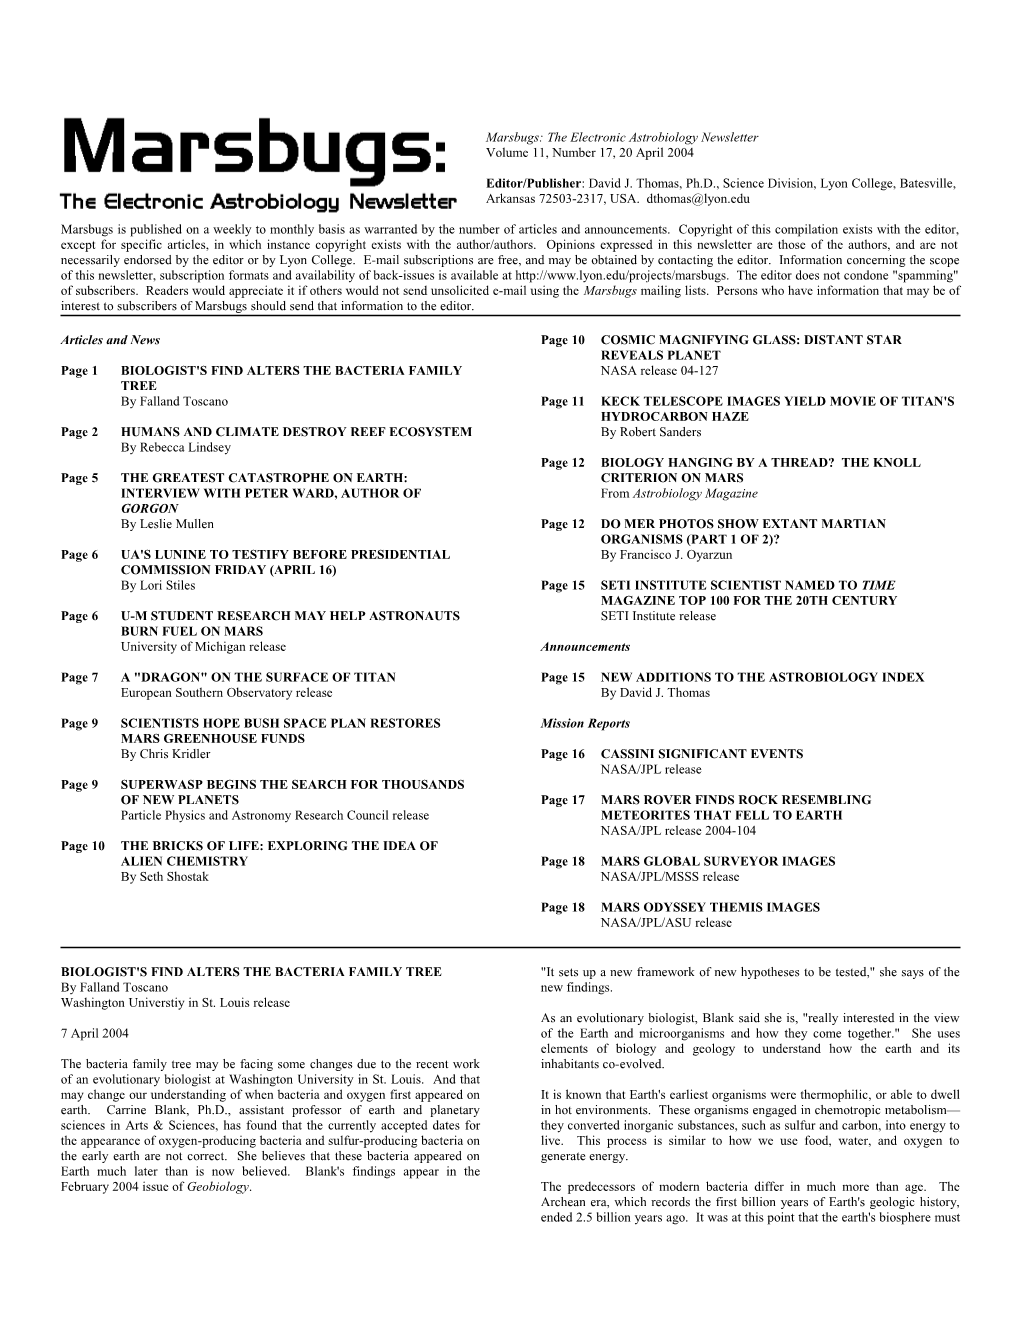 Marsbugs Vol. 11, No. 17